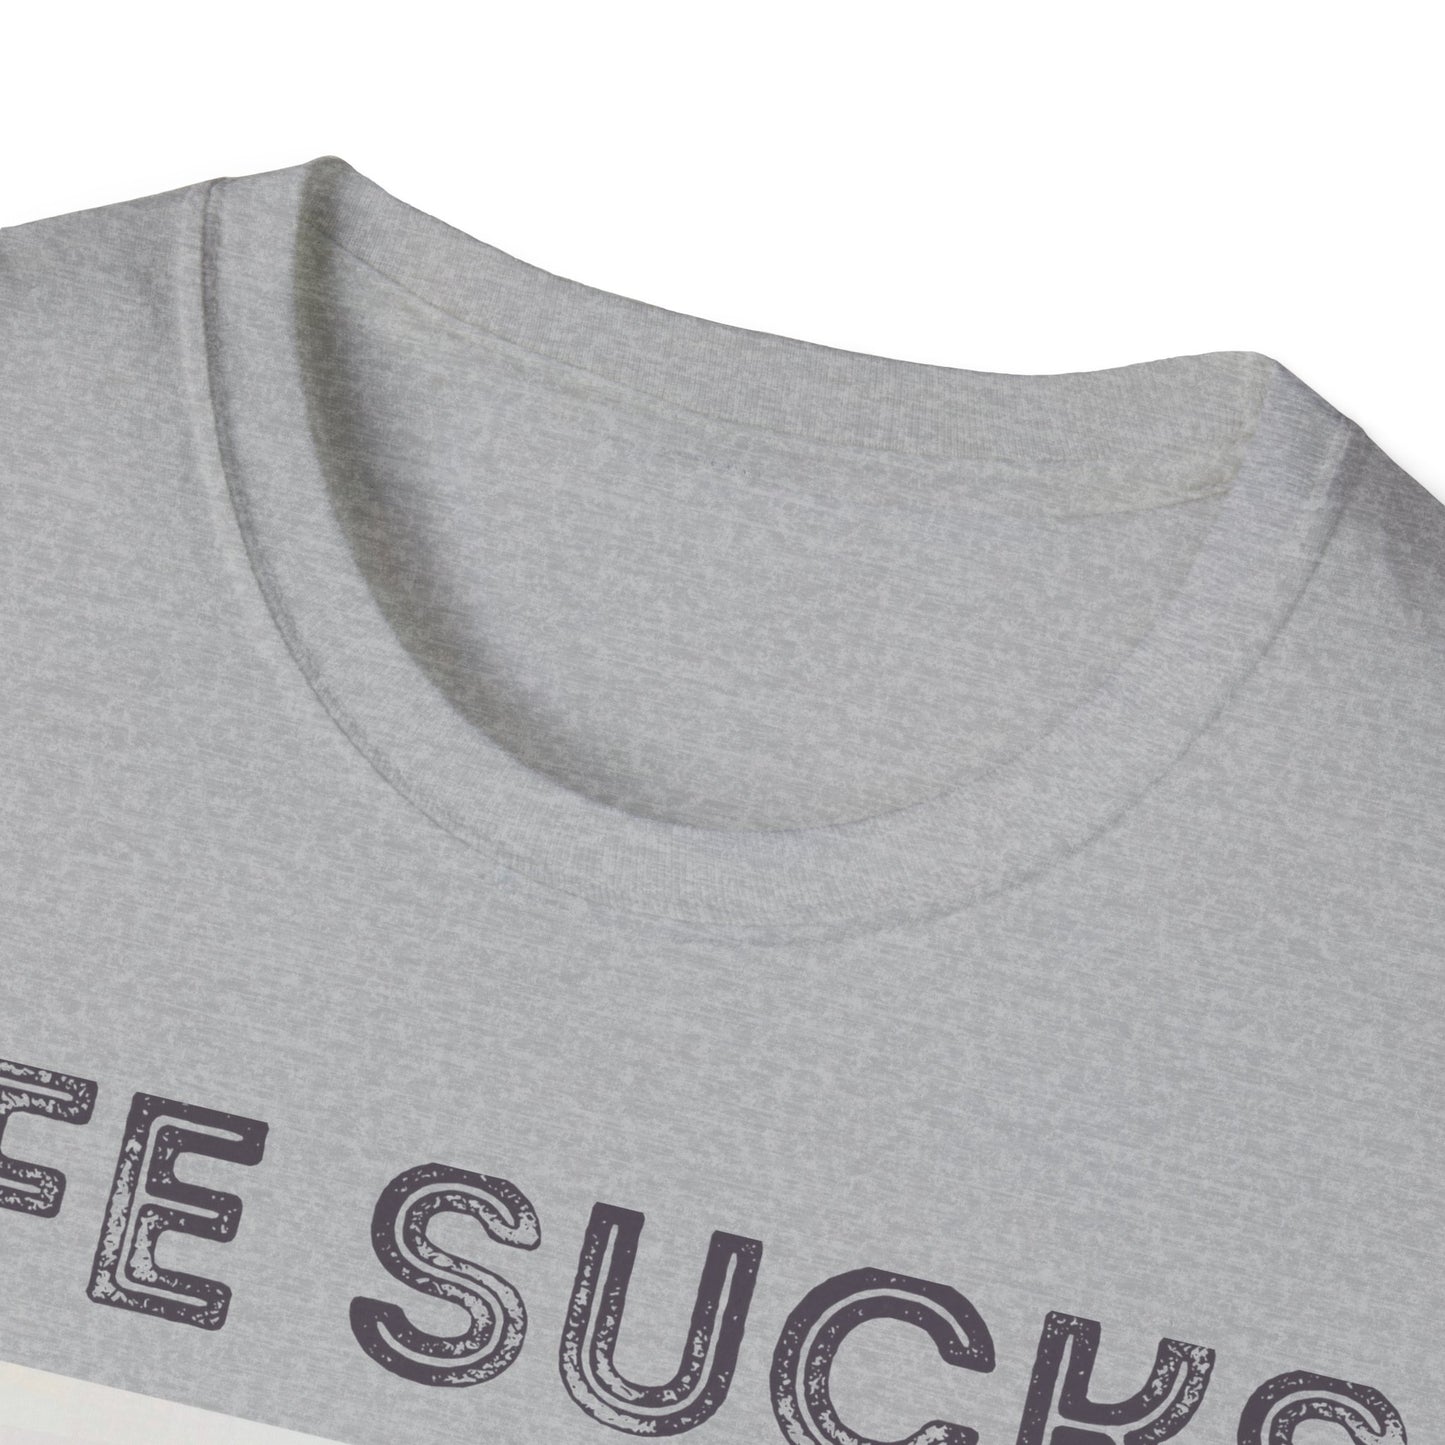 Nick Miller "Life sucks" t-shirt | New Girl fan gift